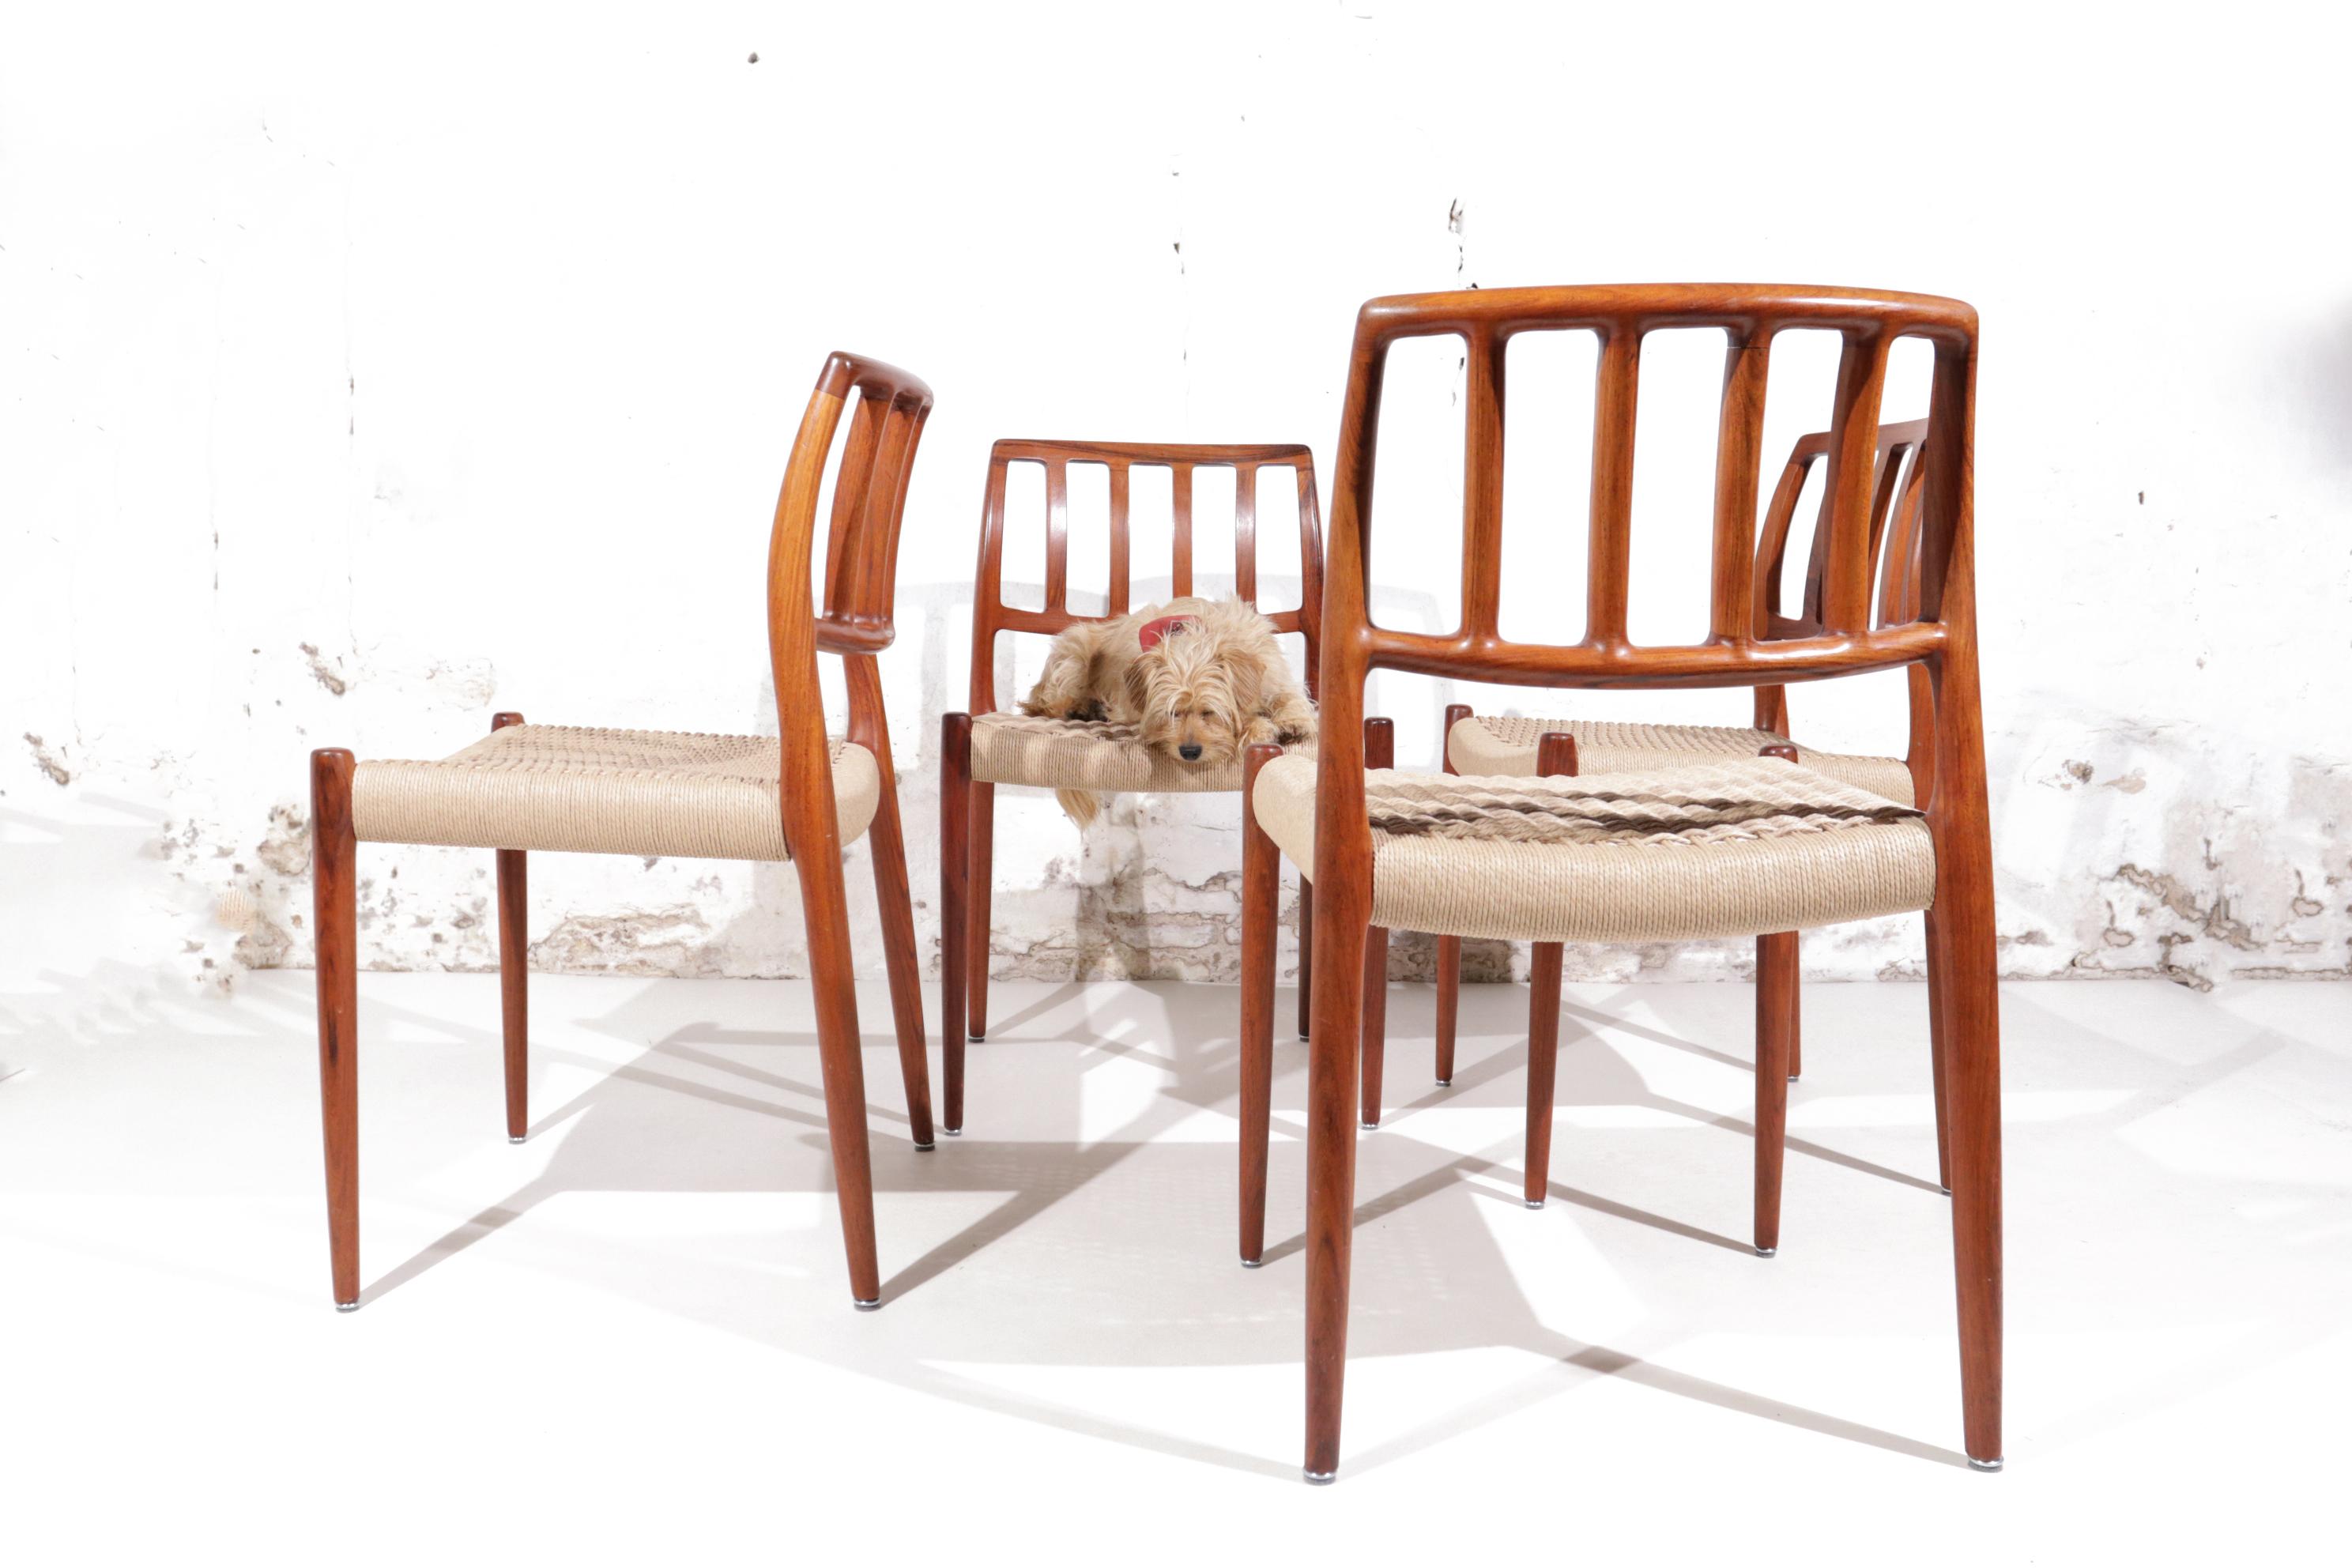 Chaises de salle à manger élégantes conçues par Niels Otto Moller pour J.L.A. Moller Mobelfabrik au Danemark.
Le cadre est en bois de rose, le plus beau et le plus rare, et il est en très bon état. Le cordon de papier a été entièrement